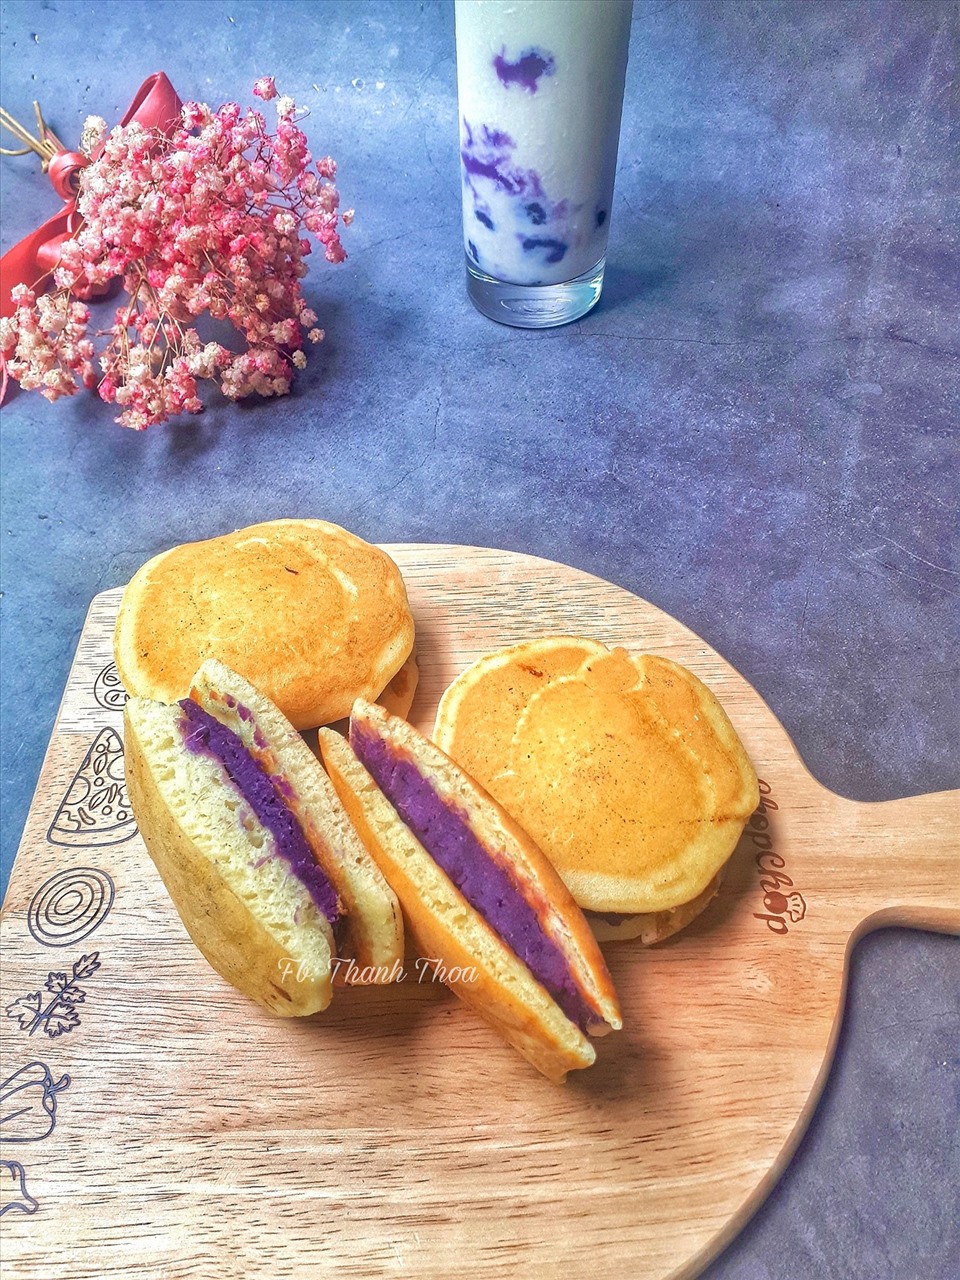 Món bánh Doremon khoai lang tím của chị Thanh Thoa. Ảnh: Thanh Thoa